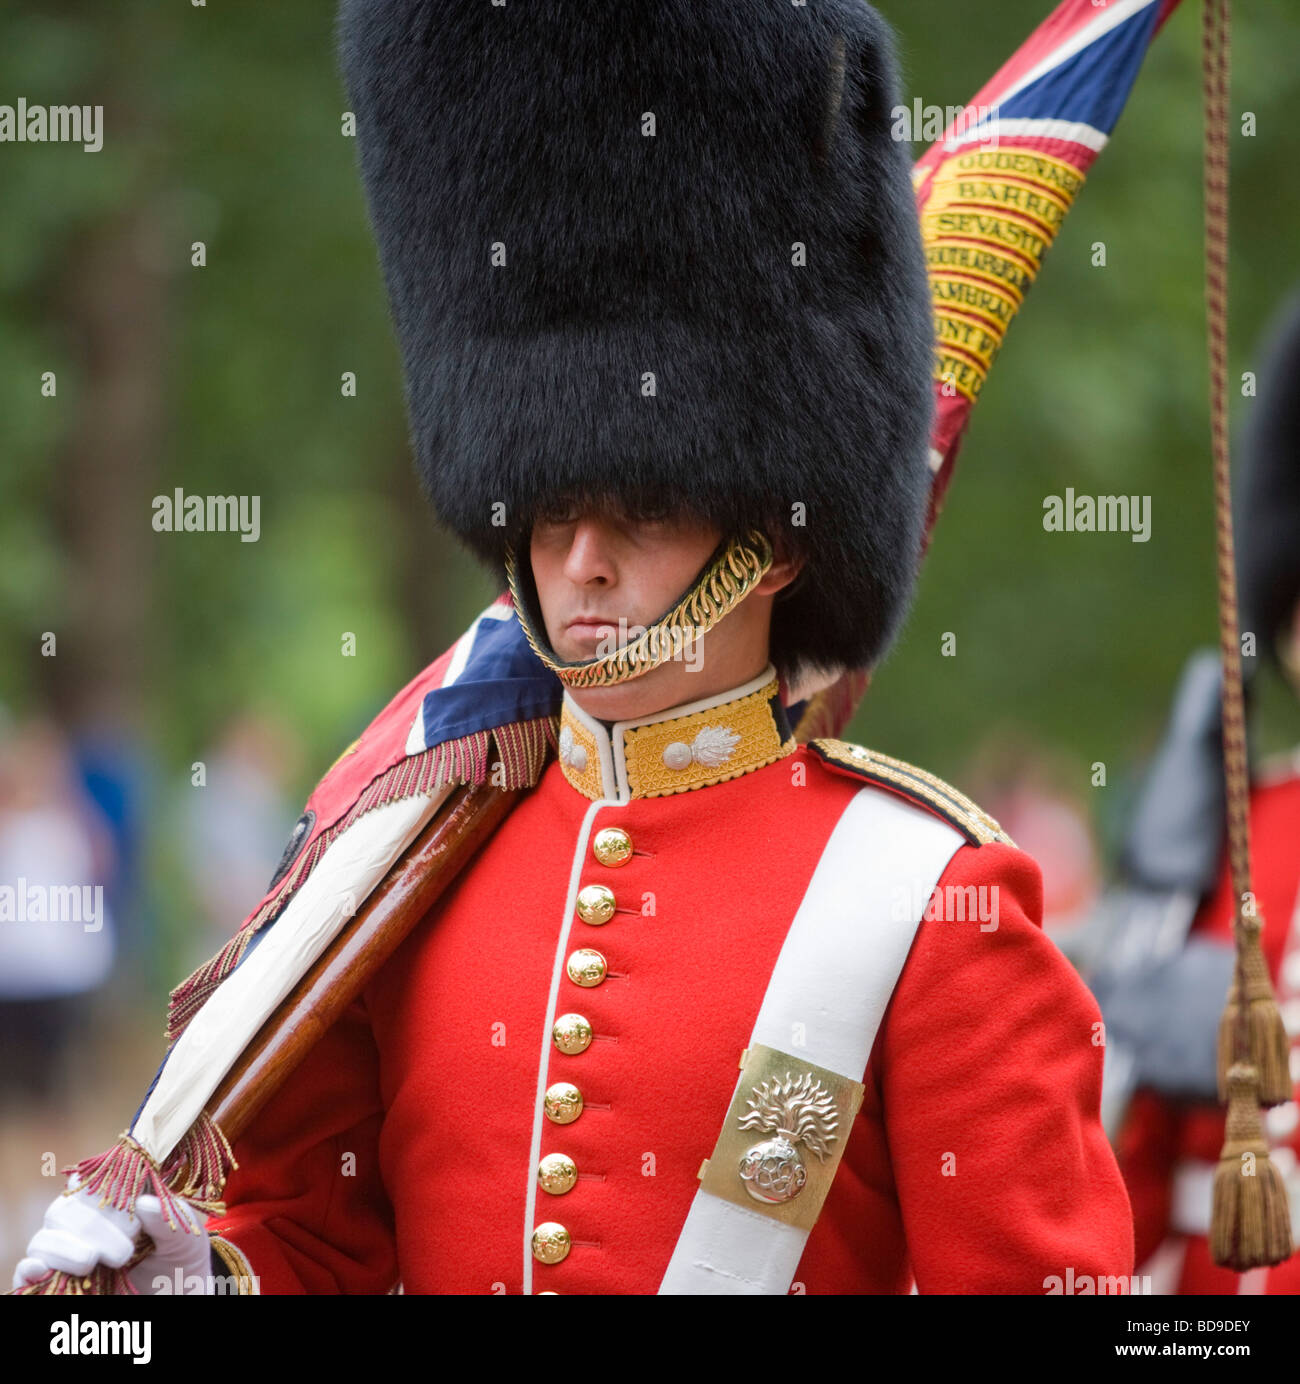 Un Ensign de la Grenadier Guards quitte après la relève de la garde, Buckingham Palace, Londres, Grande-Bretagne Banque D'Images